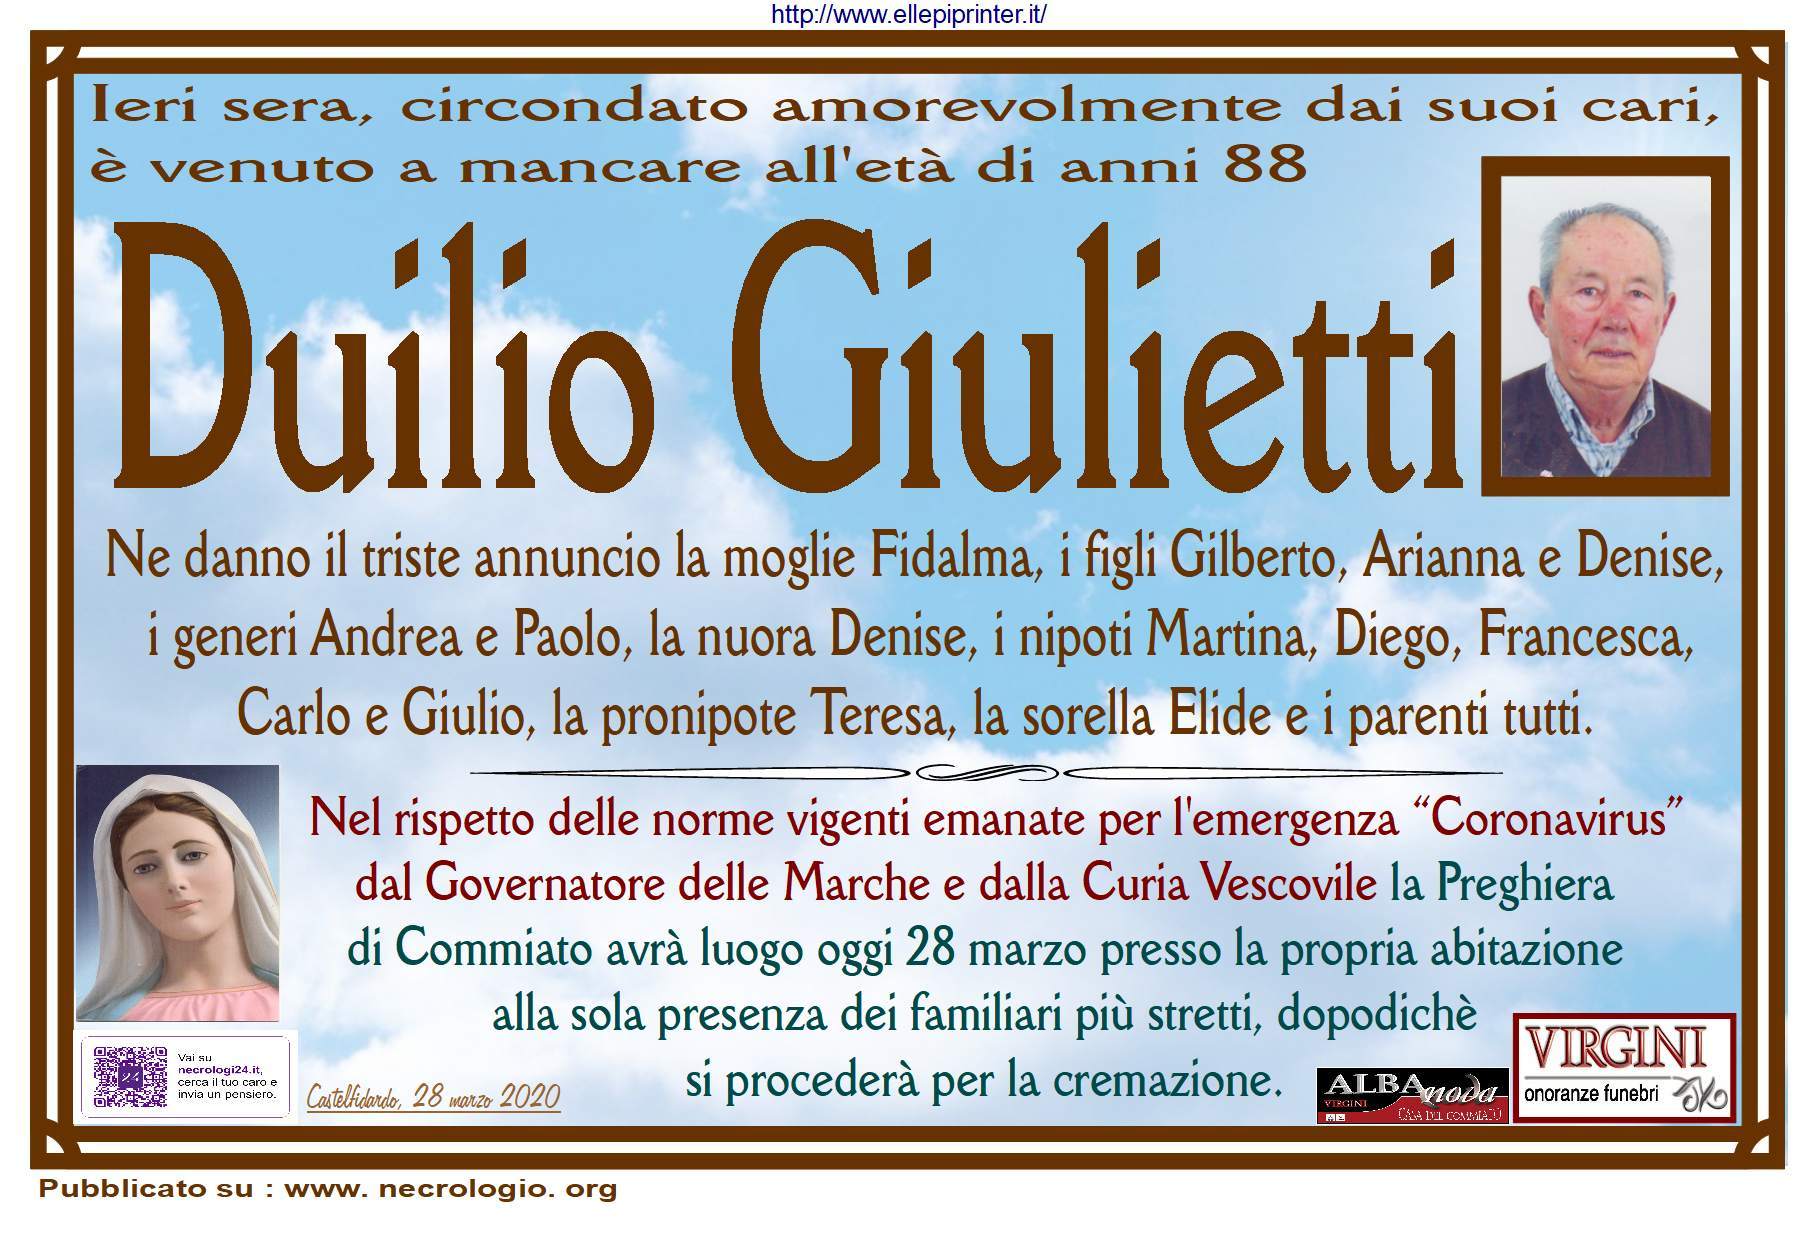 Duilio Giulietti